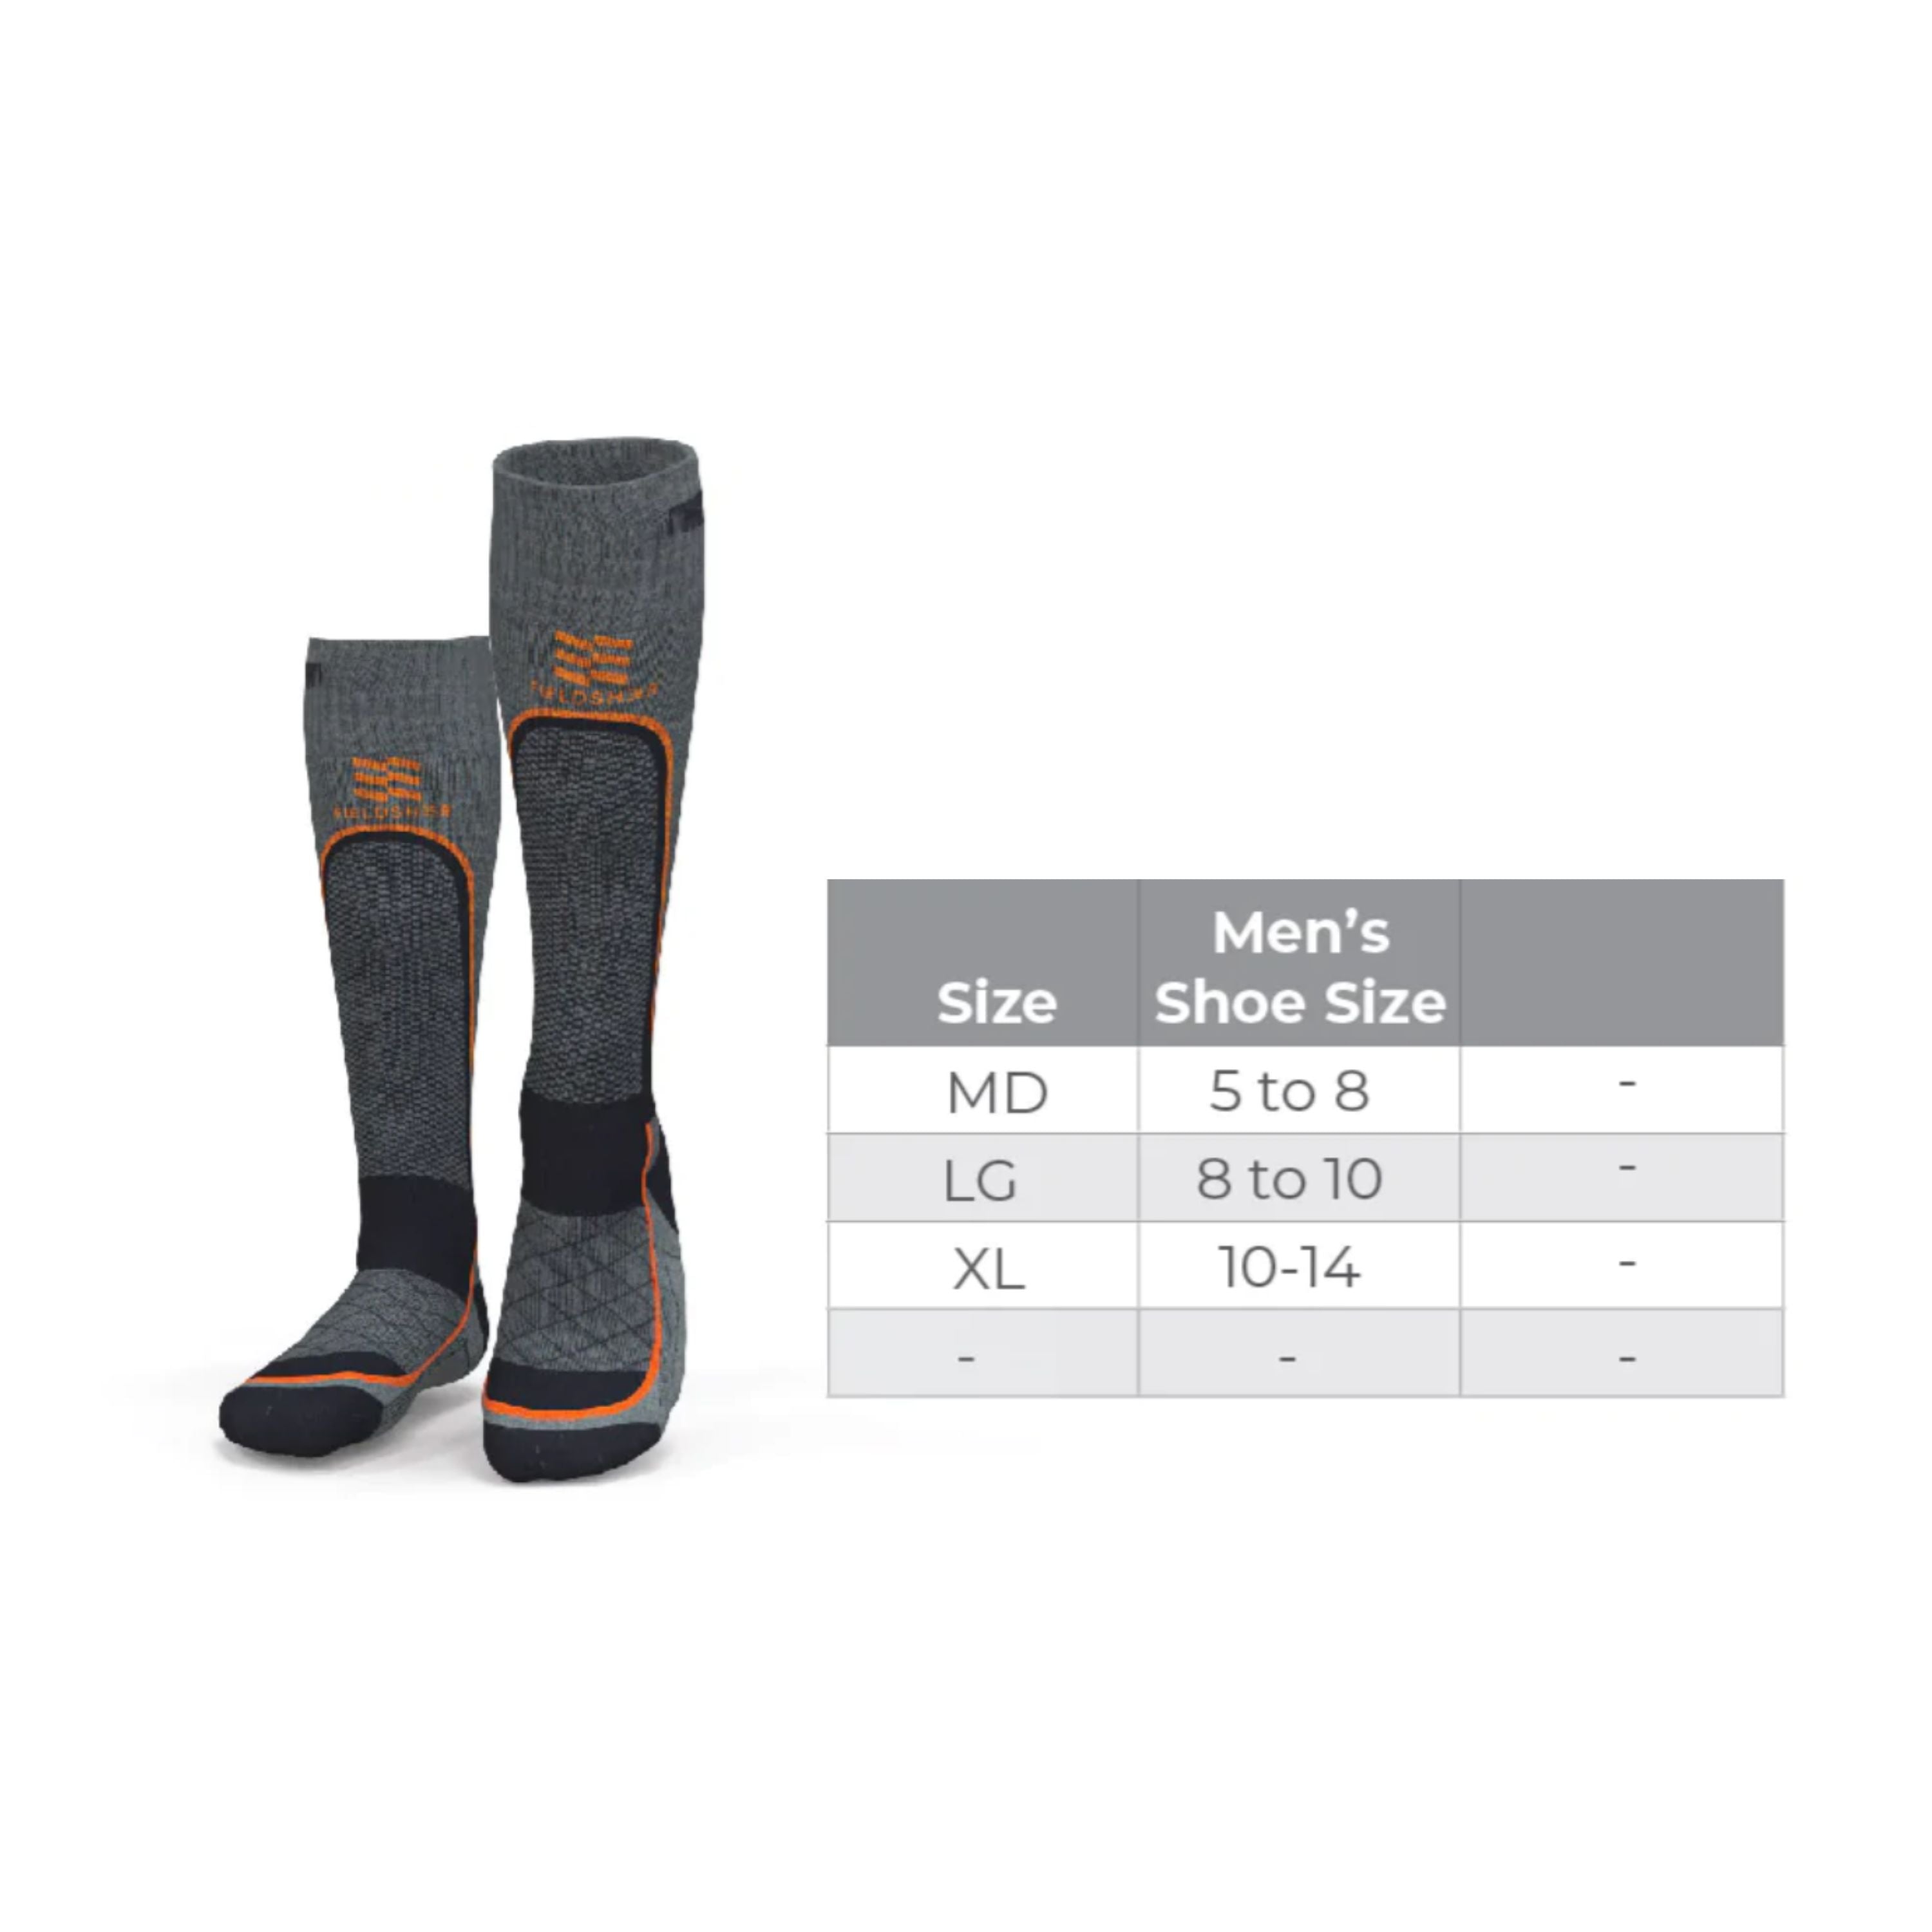 "Premium 2.0" Merino heated socks - Men's